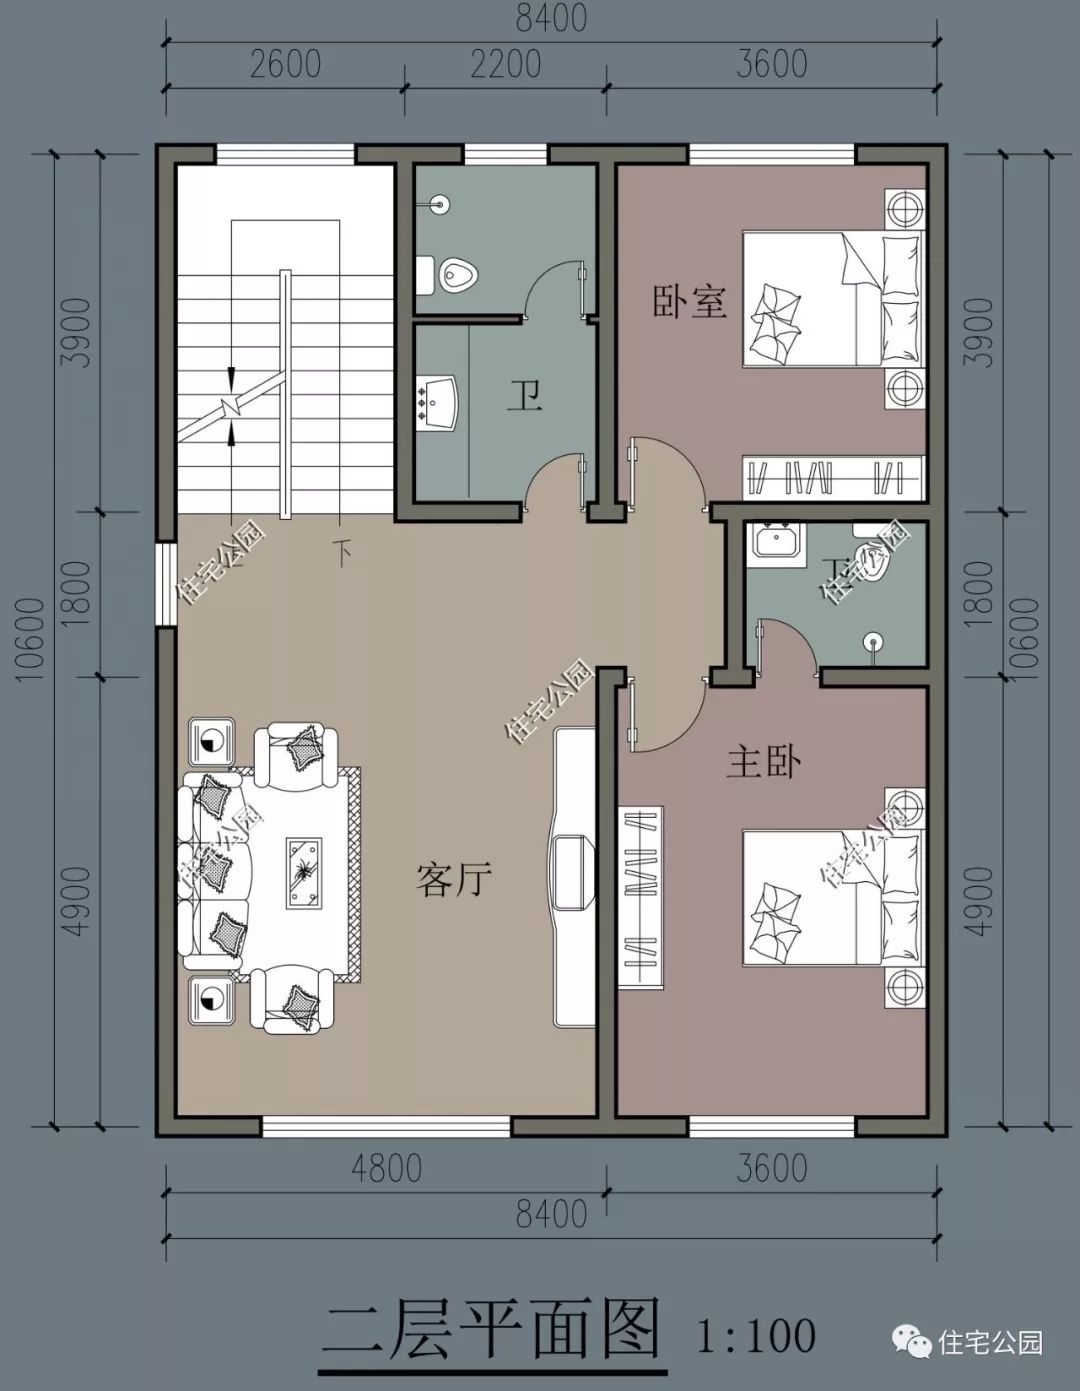 住宅三层与二层采用相同的布局,只将客厅处改为了一个大露台,方便家人